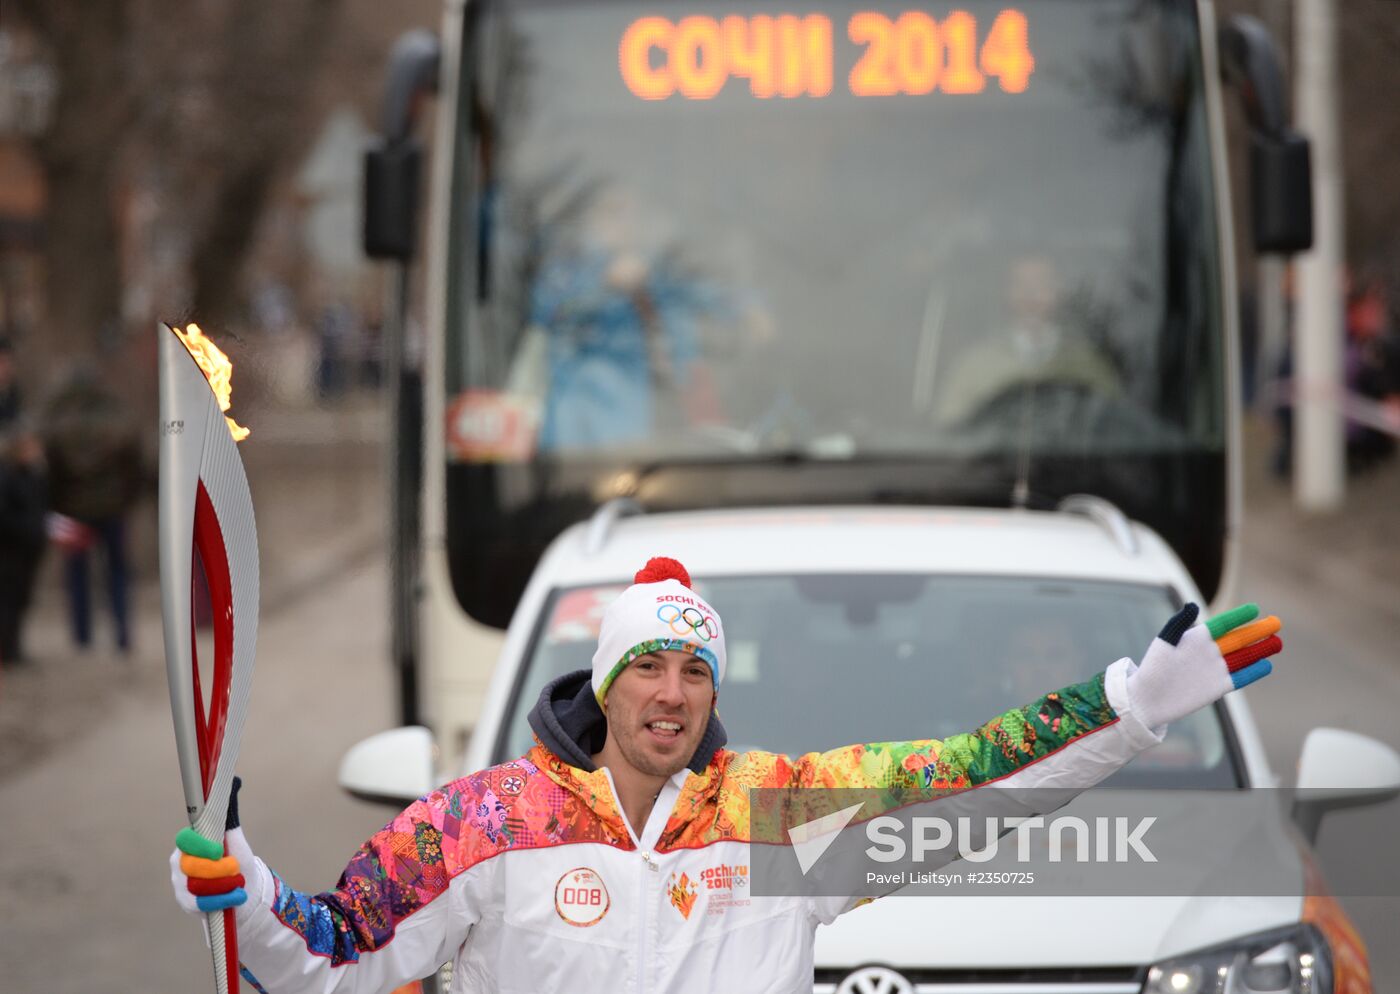 Sochi 2014 Olympic torch relay. Rostov Region